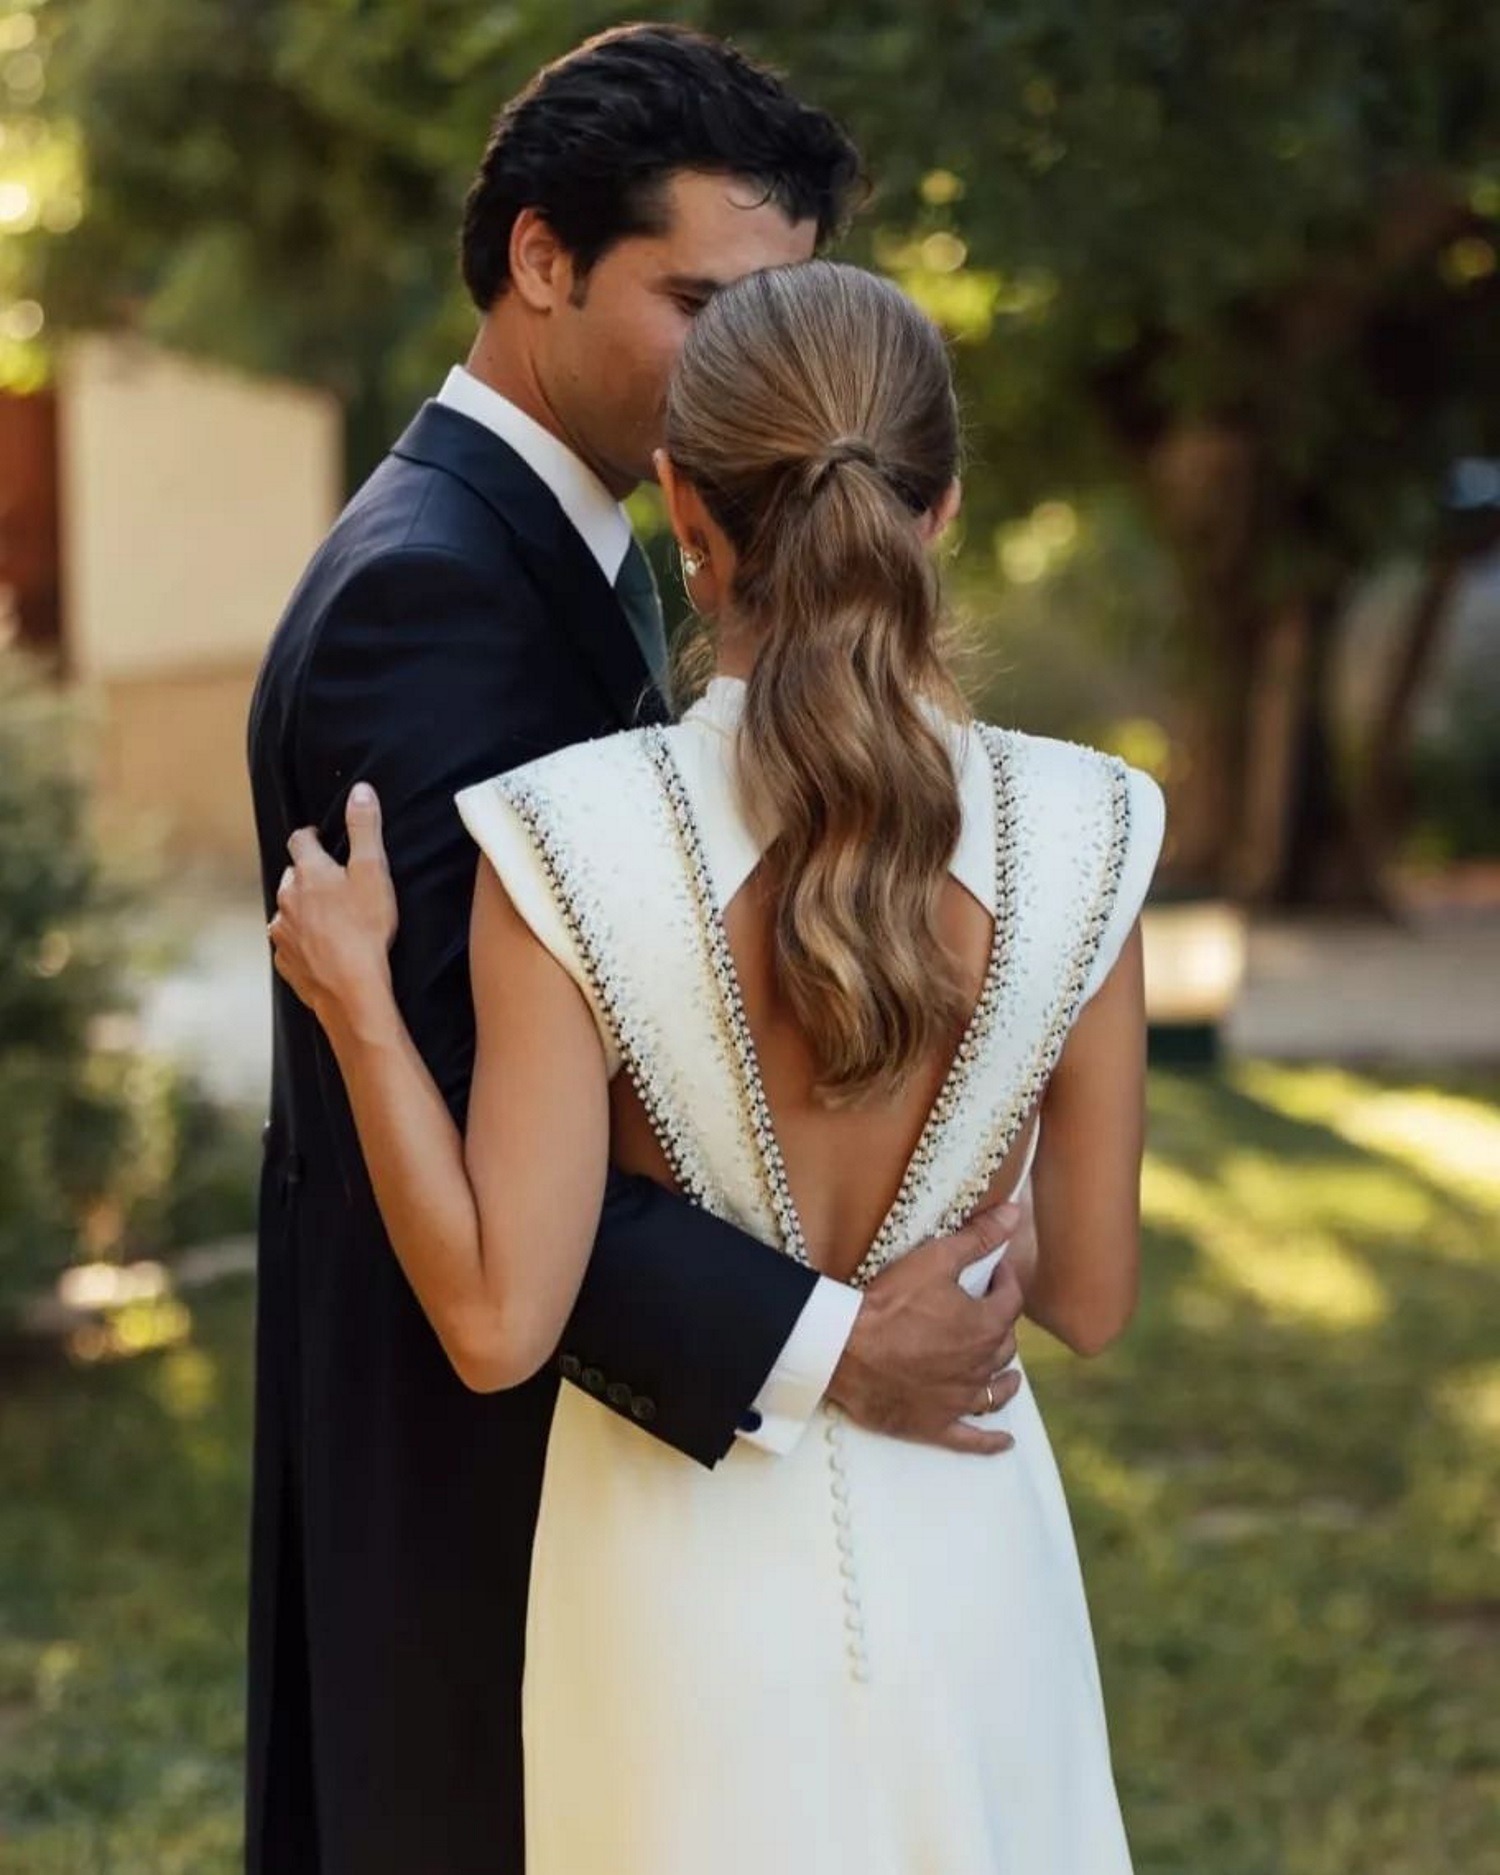 Margarita se casó el 1/10/2022 en Alicante con un vestido de Inuñez.